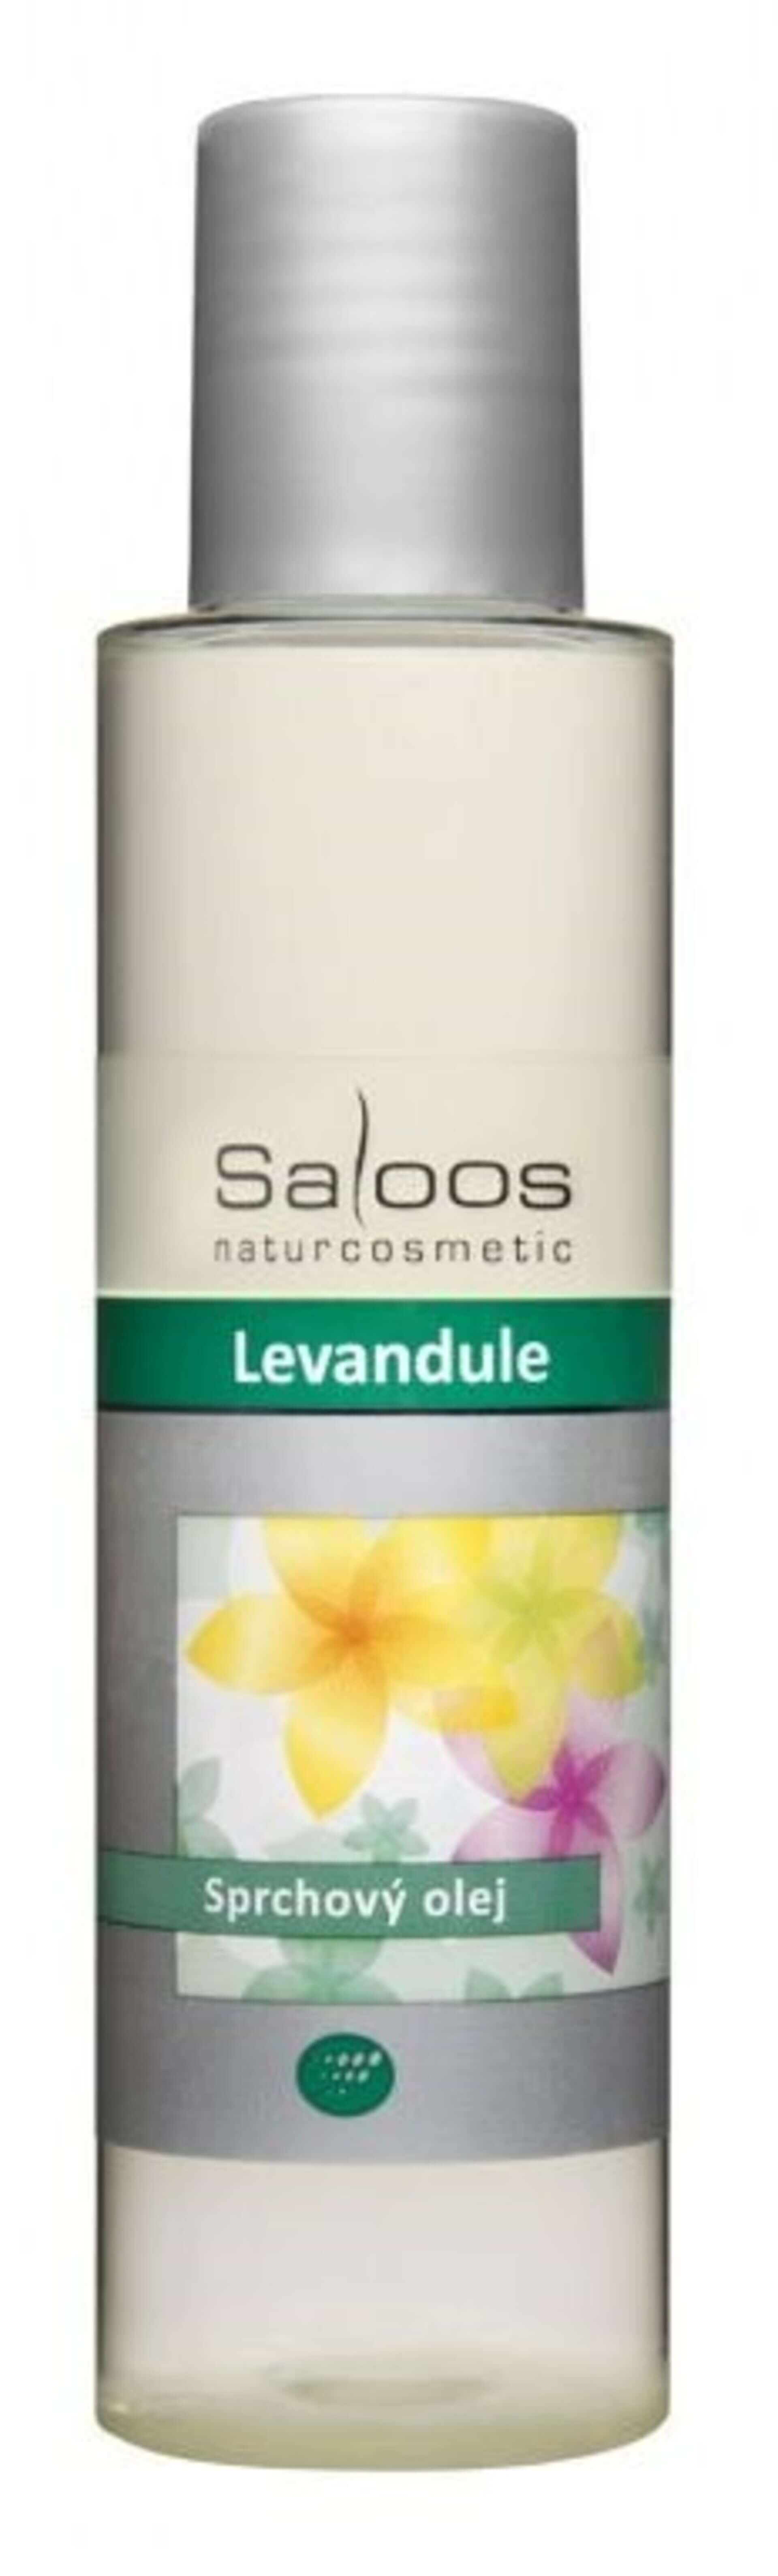 Saloos sprchový olej Levanduľa 125 ml